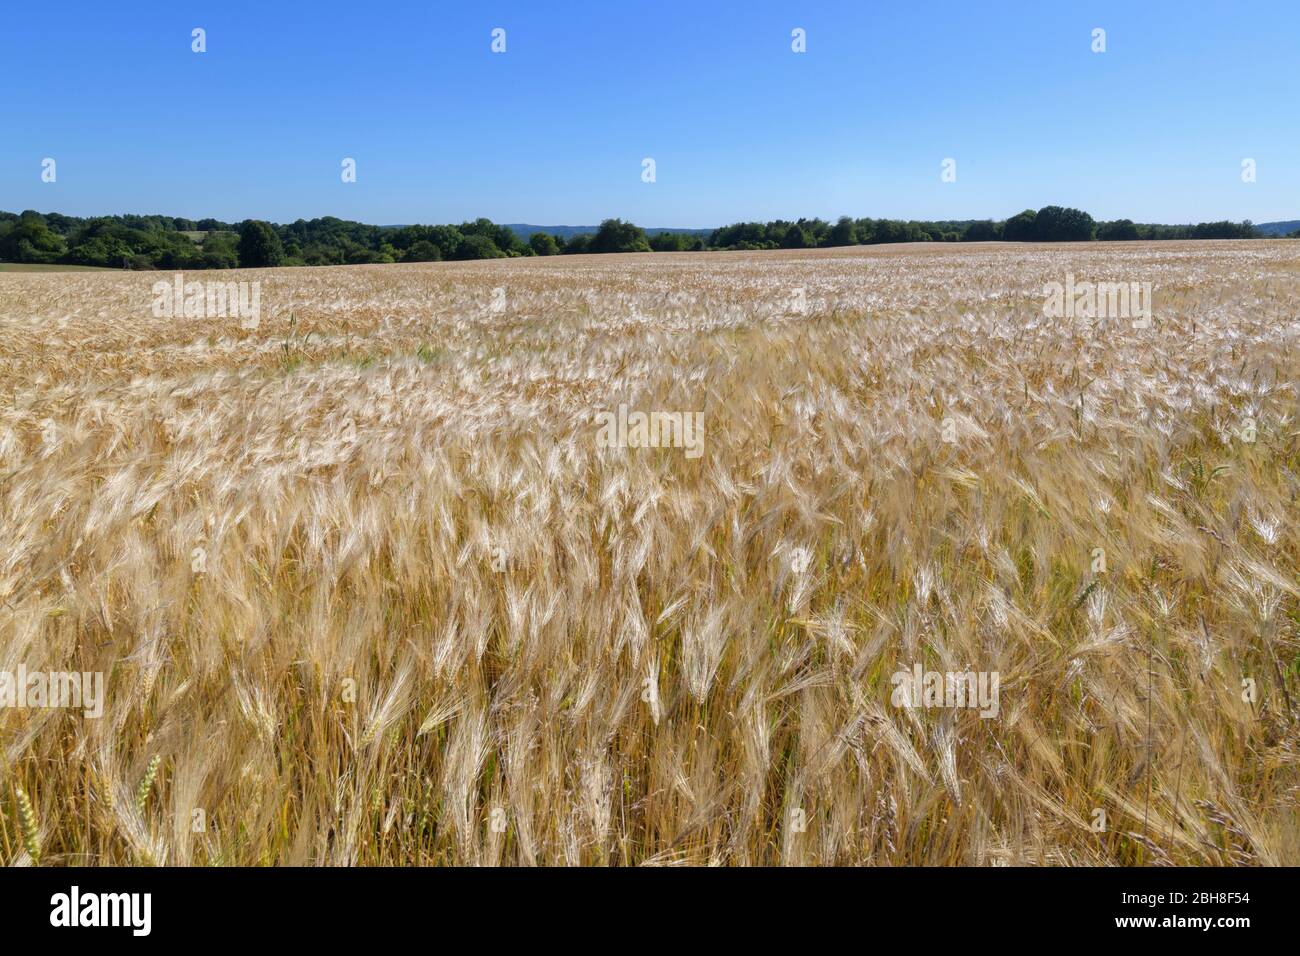 Barley field, Grandenborn, Ringgau, Werra-Meissner district, Hesse, Germany Stock Photo